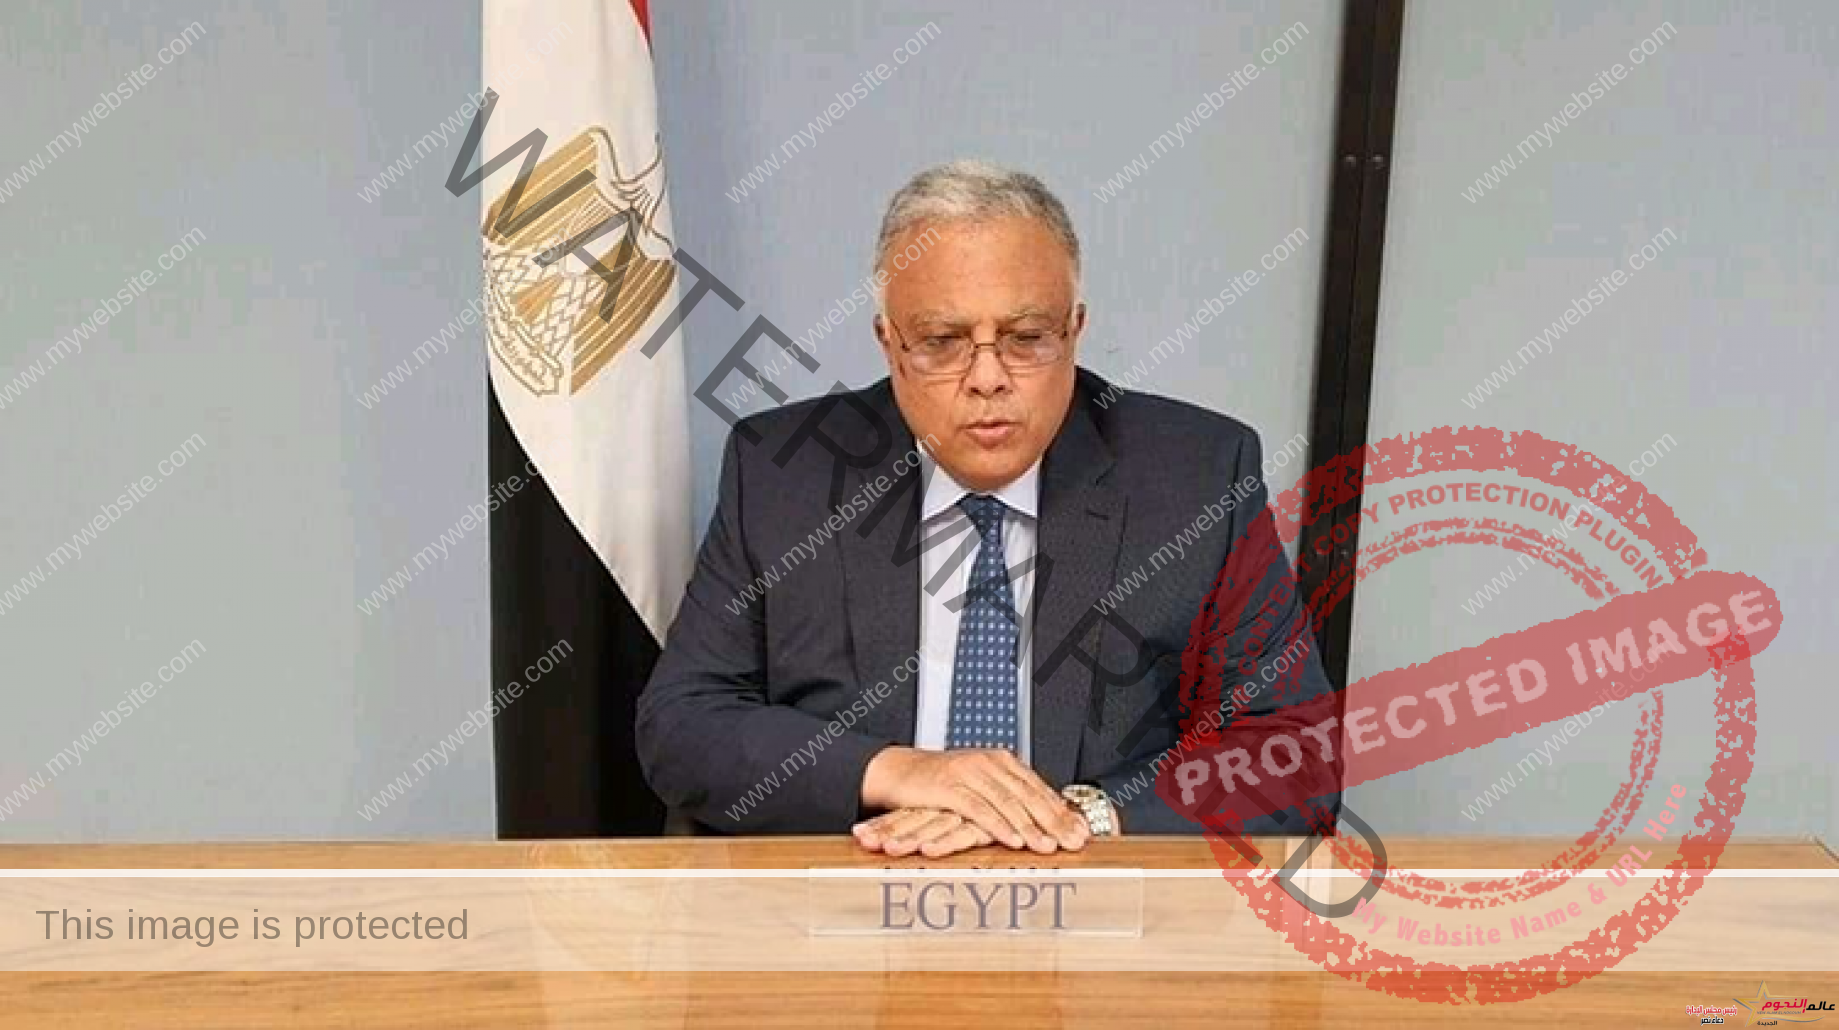 مصر تنجح في إصدار بيان مشترك بمجلس حقوق الإنسان في جنيف يشيد بدور الأسرة في دعم وتعزيز حقوق الإنسان